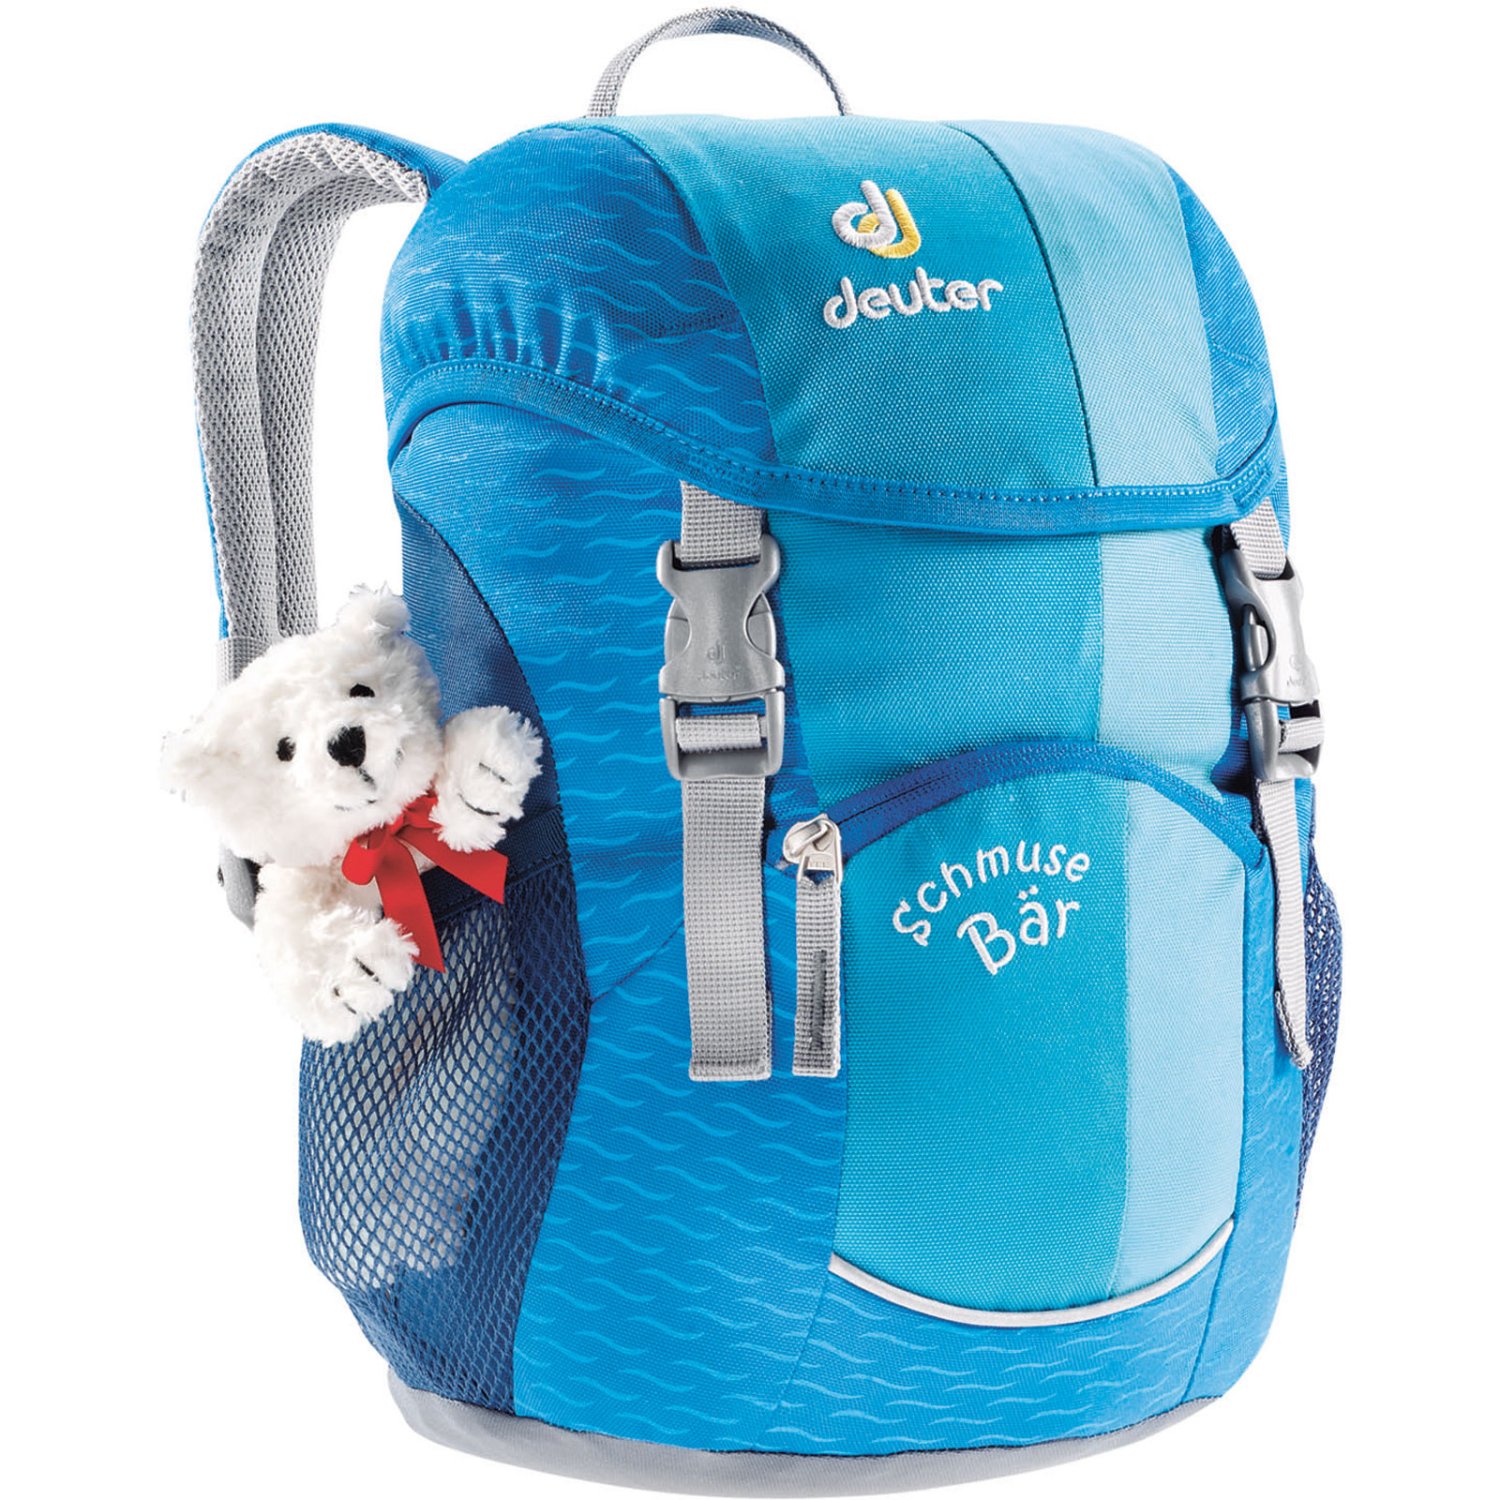 Велосипедный рюкзак Deuter Schmusebar, детский, 34х20х16, 8 л, голубой, 36003_3006